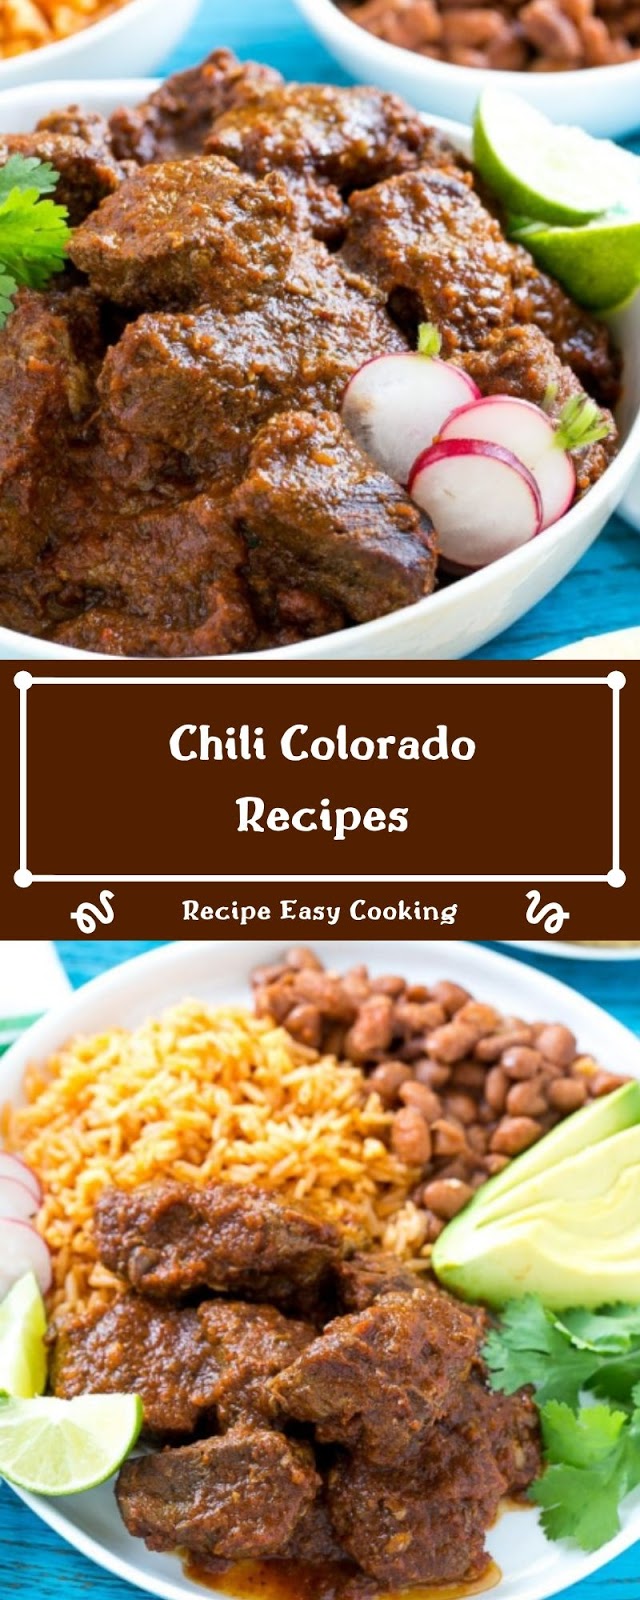 Chili Colorado Recipes